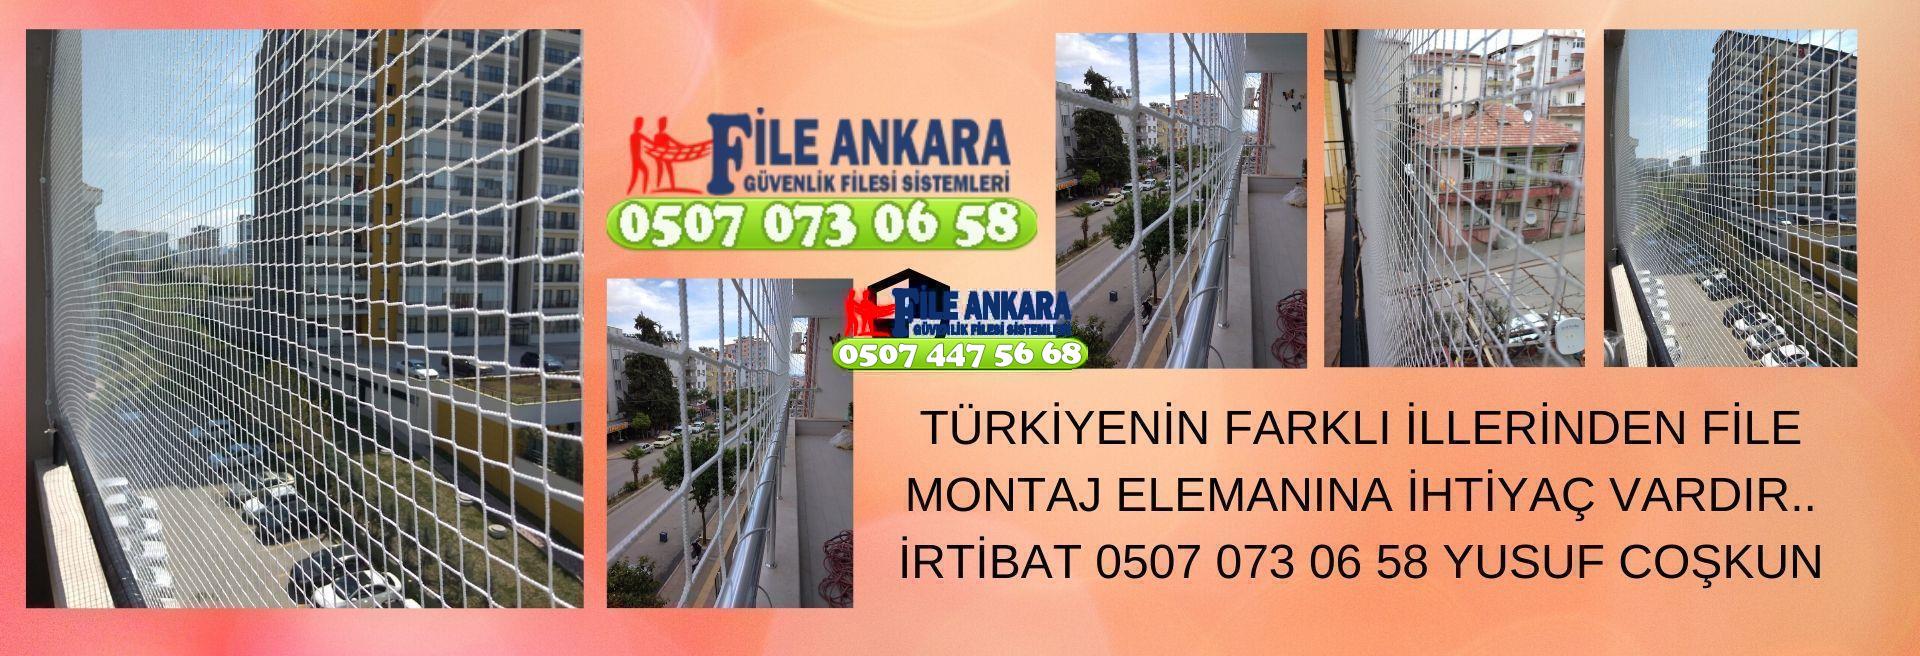 Ankara Akyurt Güvenlik Filesi Malzeme Satışı 0507 447 56 68